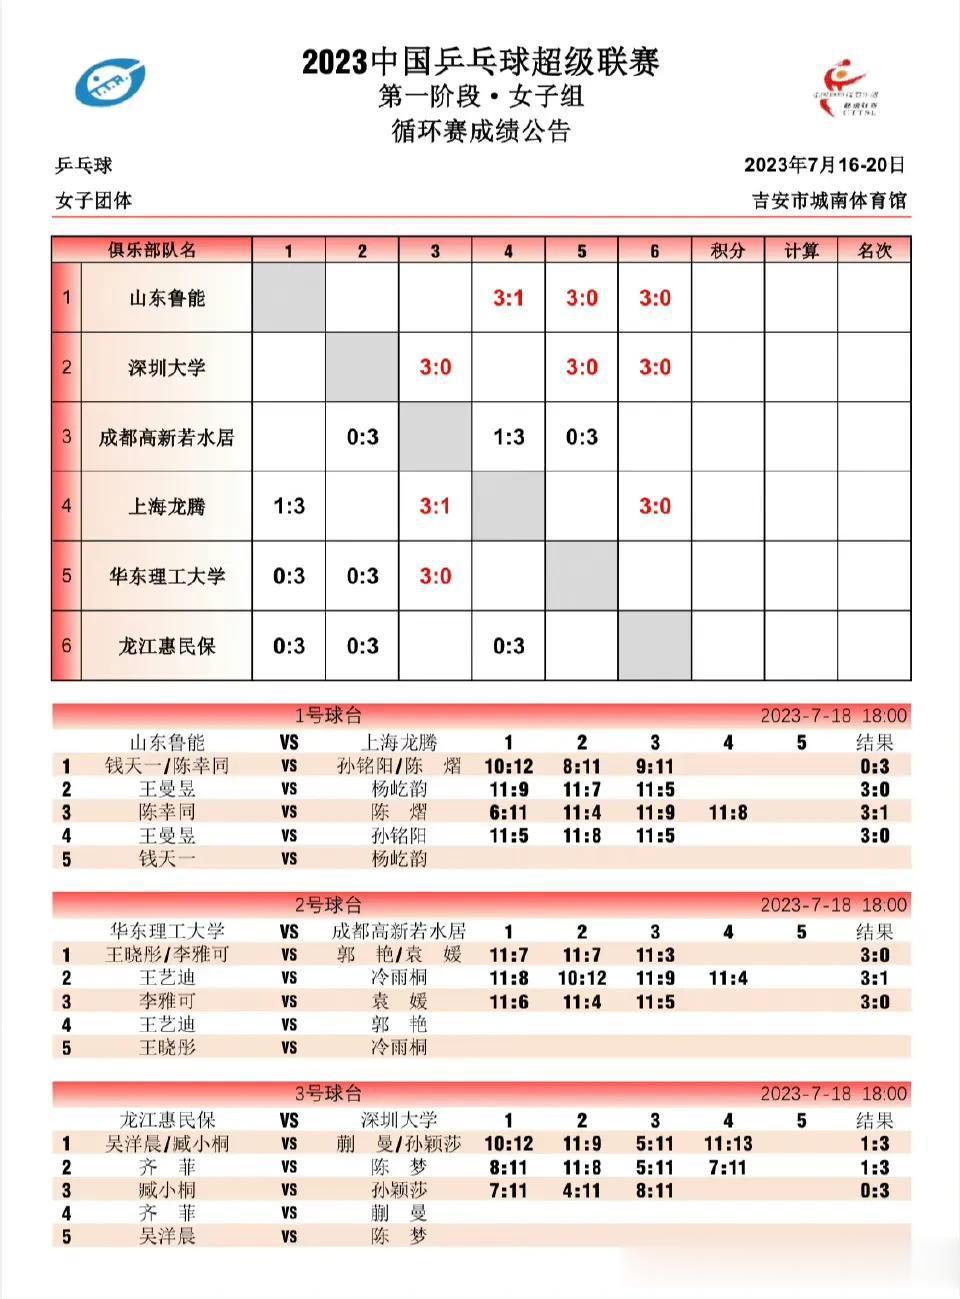  
积分排名
女队并列第一
深圳大学——6分
山东鲁能——6分
第二上海龙腾——(2)